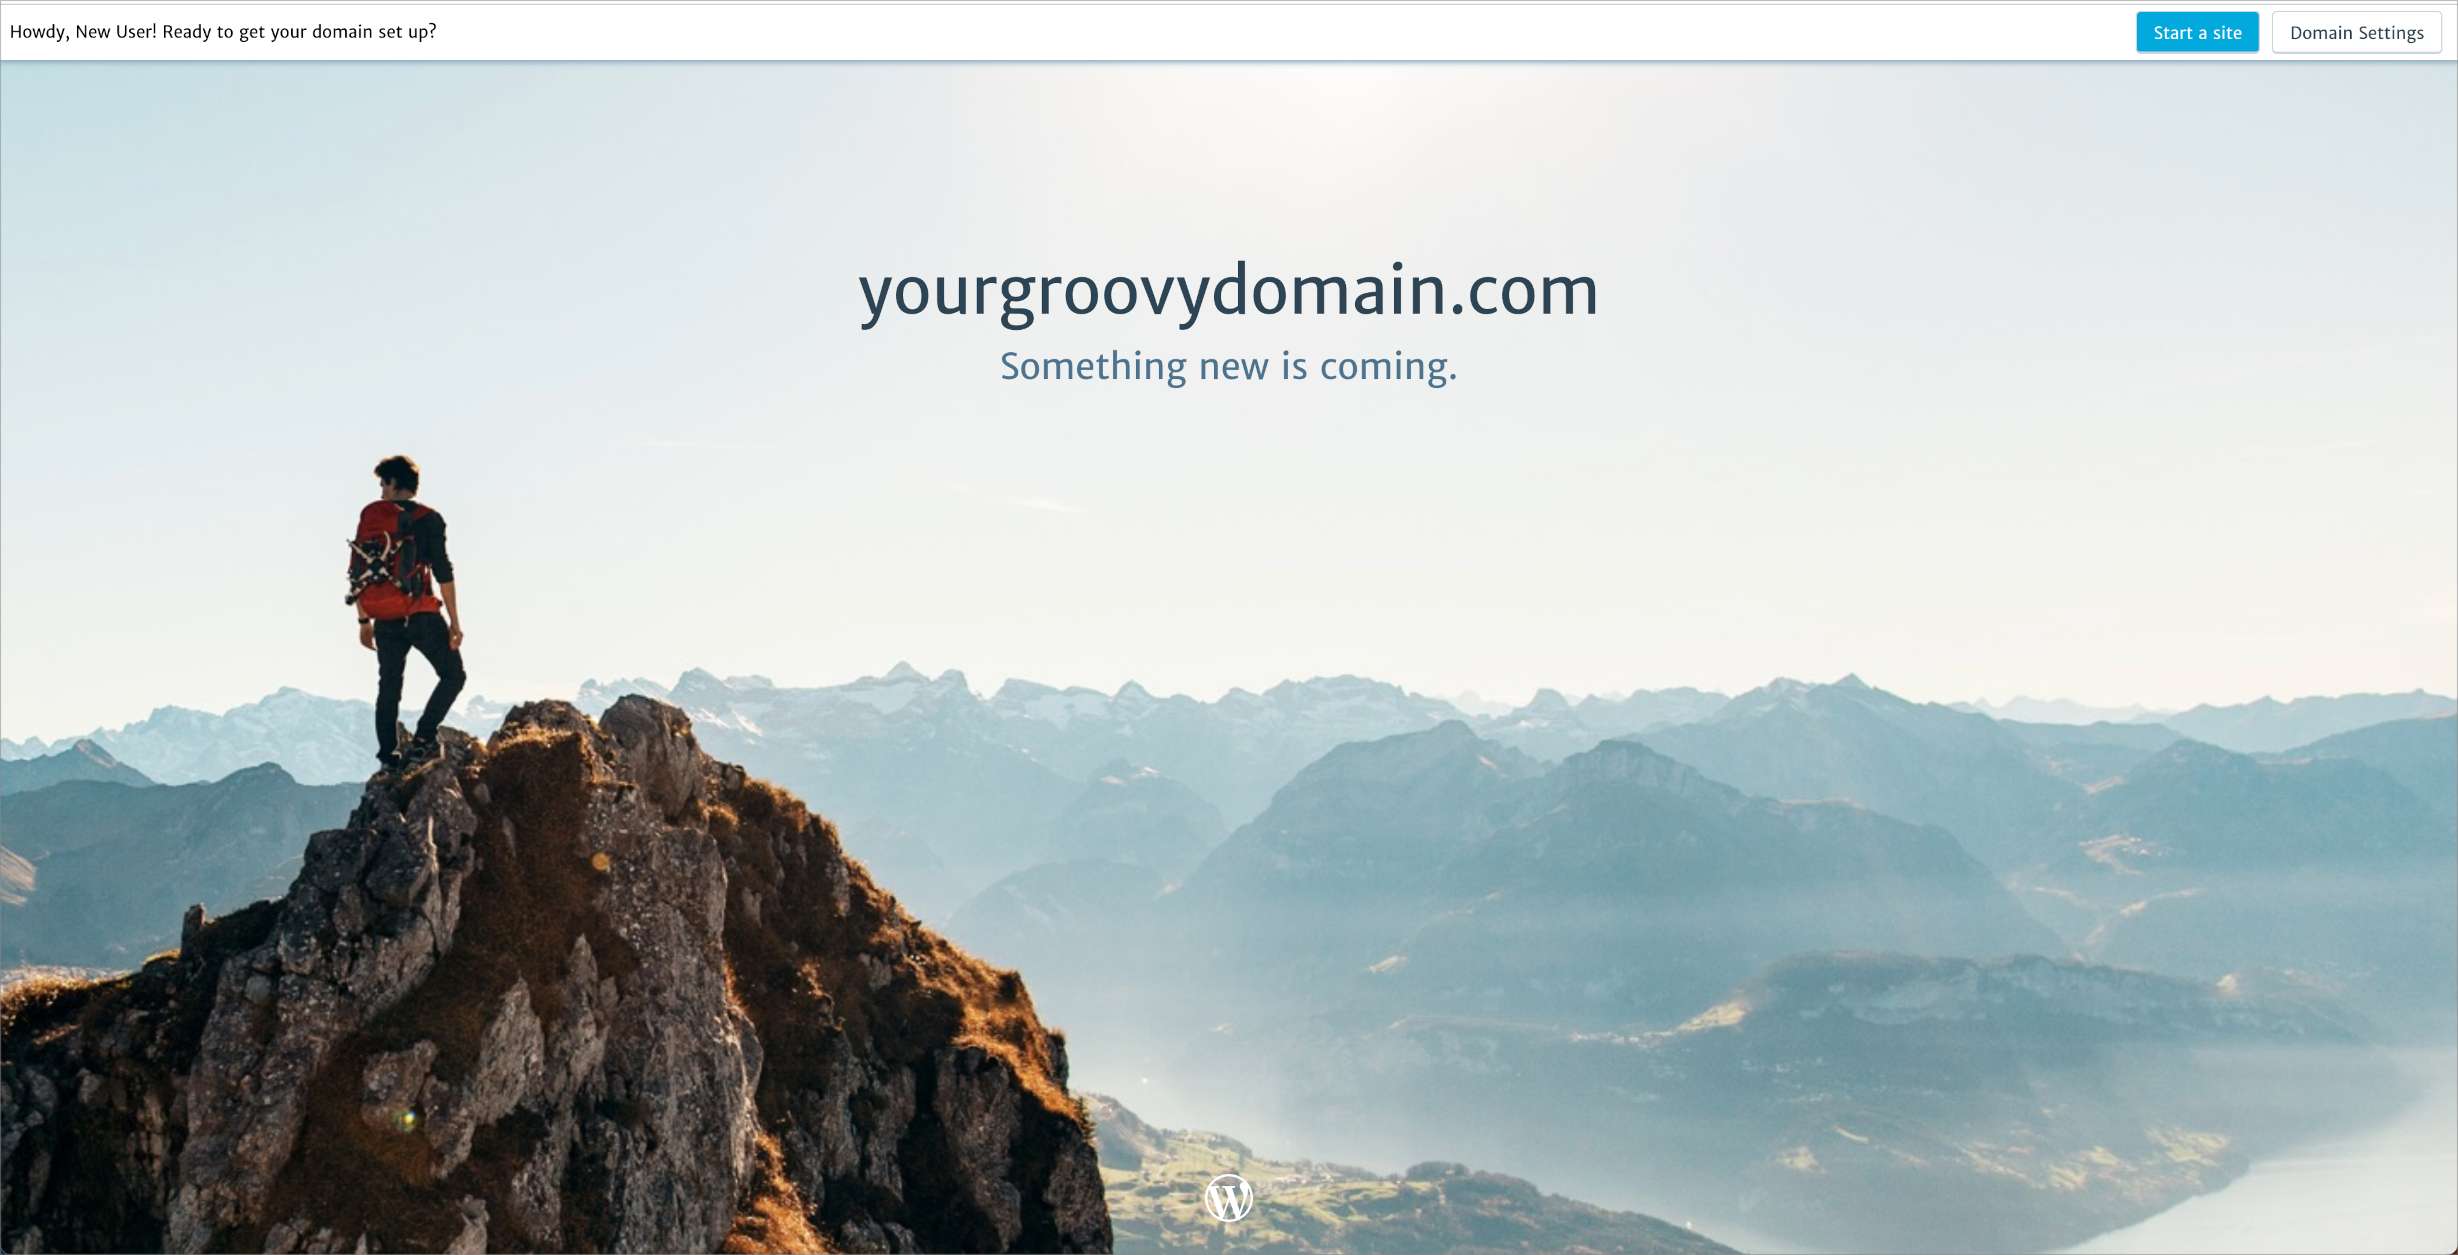 La página de destino del dominio, que muestra el nombre del dominio y el texto "se acerca algo nuevo".